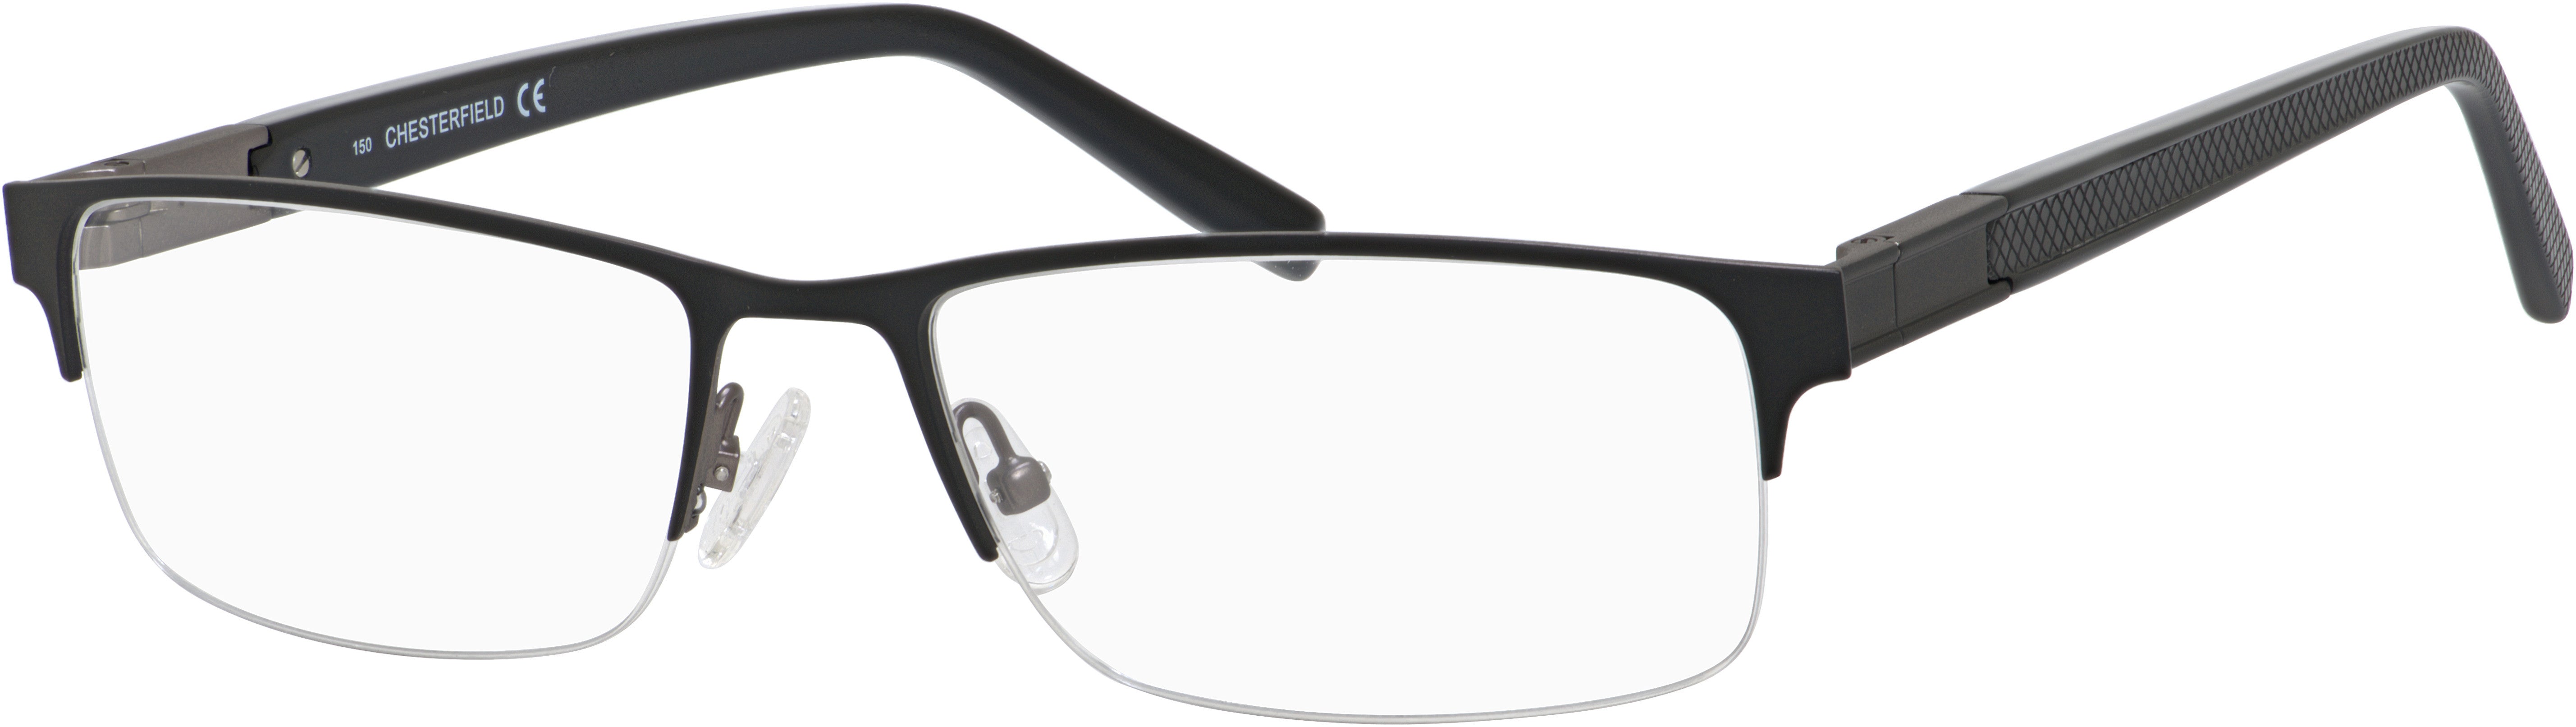  Chesterfield 45 XL Rectangular Eyeglasses 0JVW-0JVW  Black (00 Demo Lens)